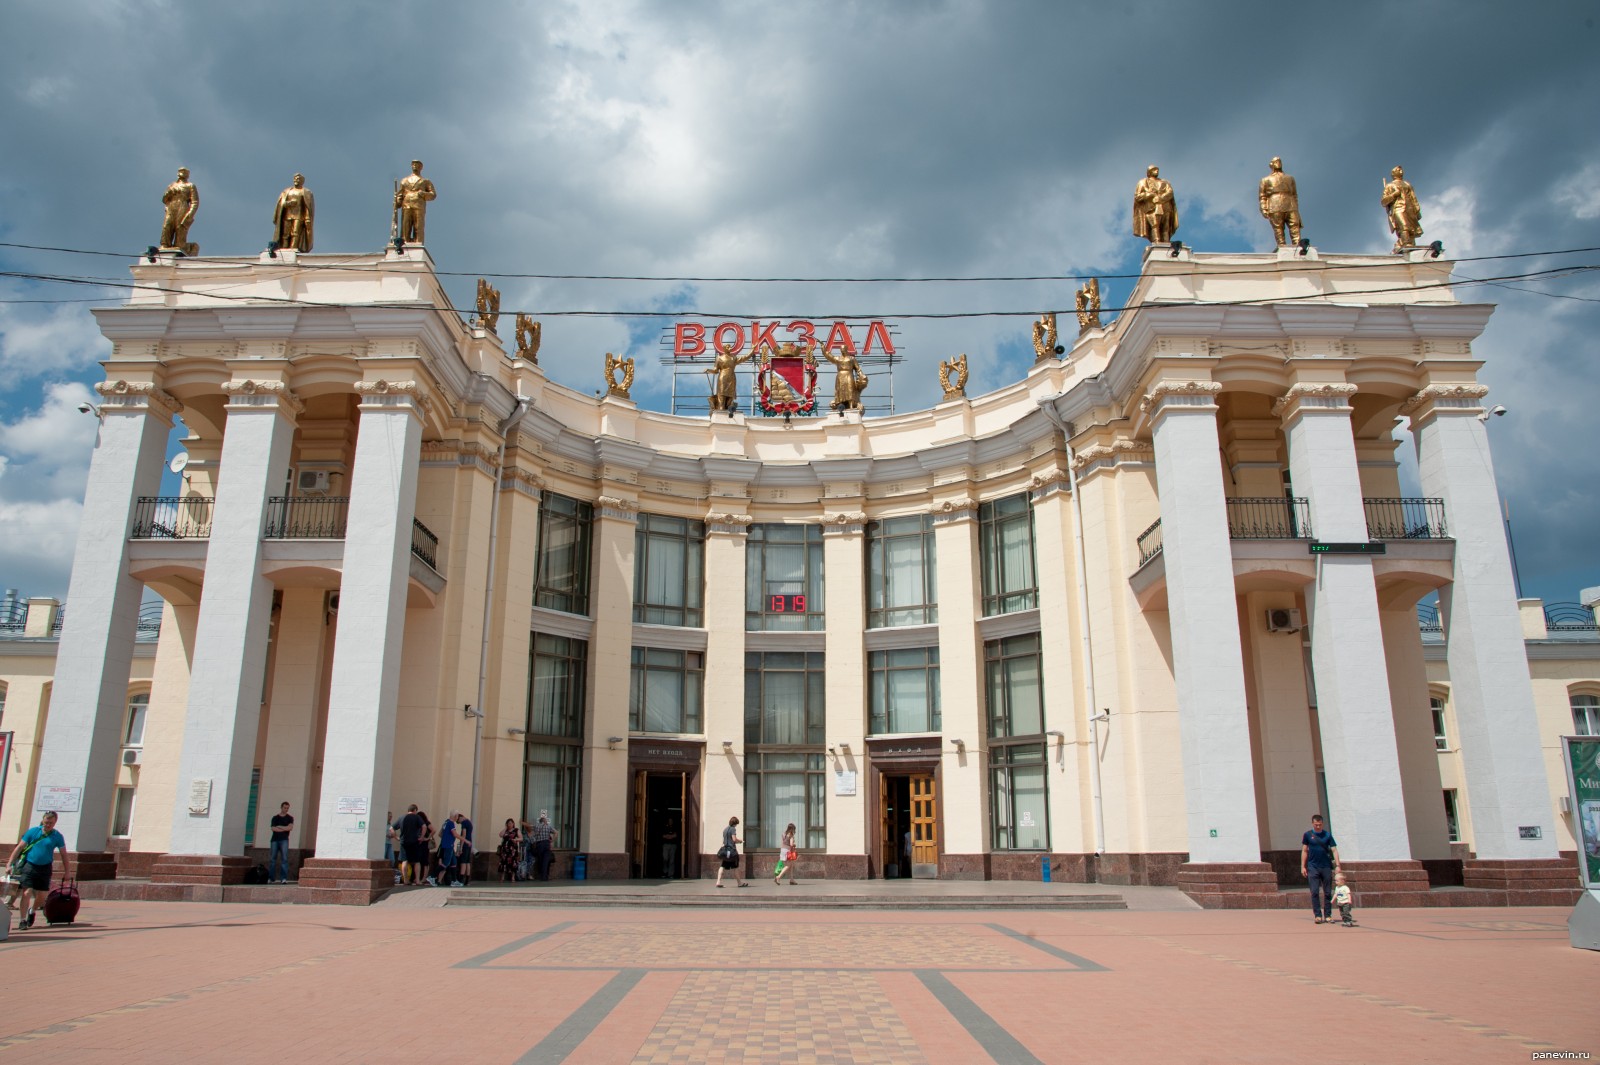 Вокзал в Воронеже: адрес, телефоны и услуги